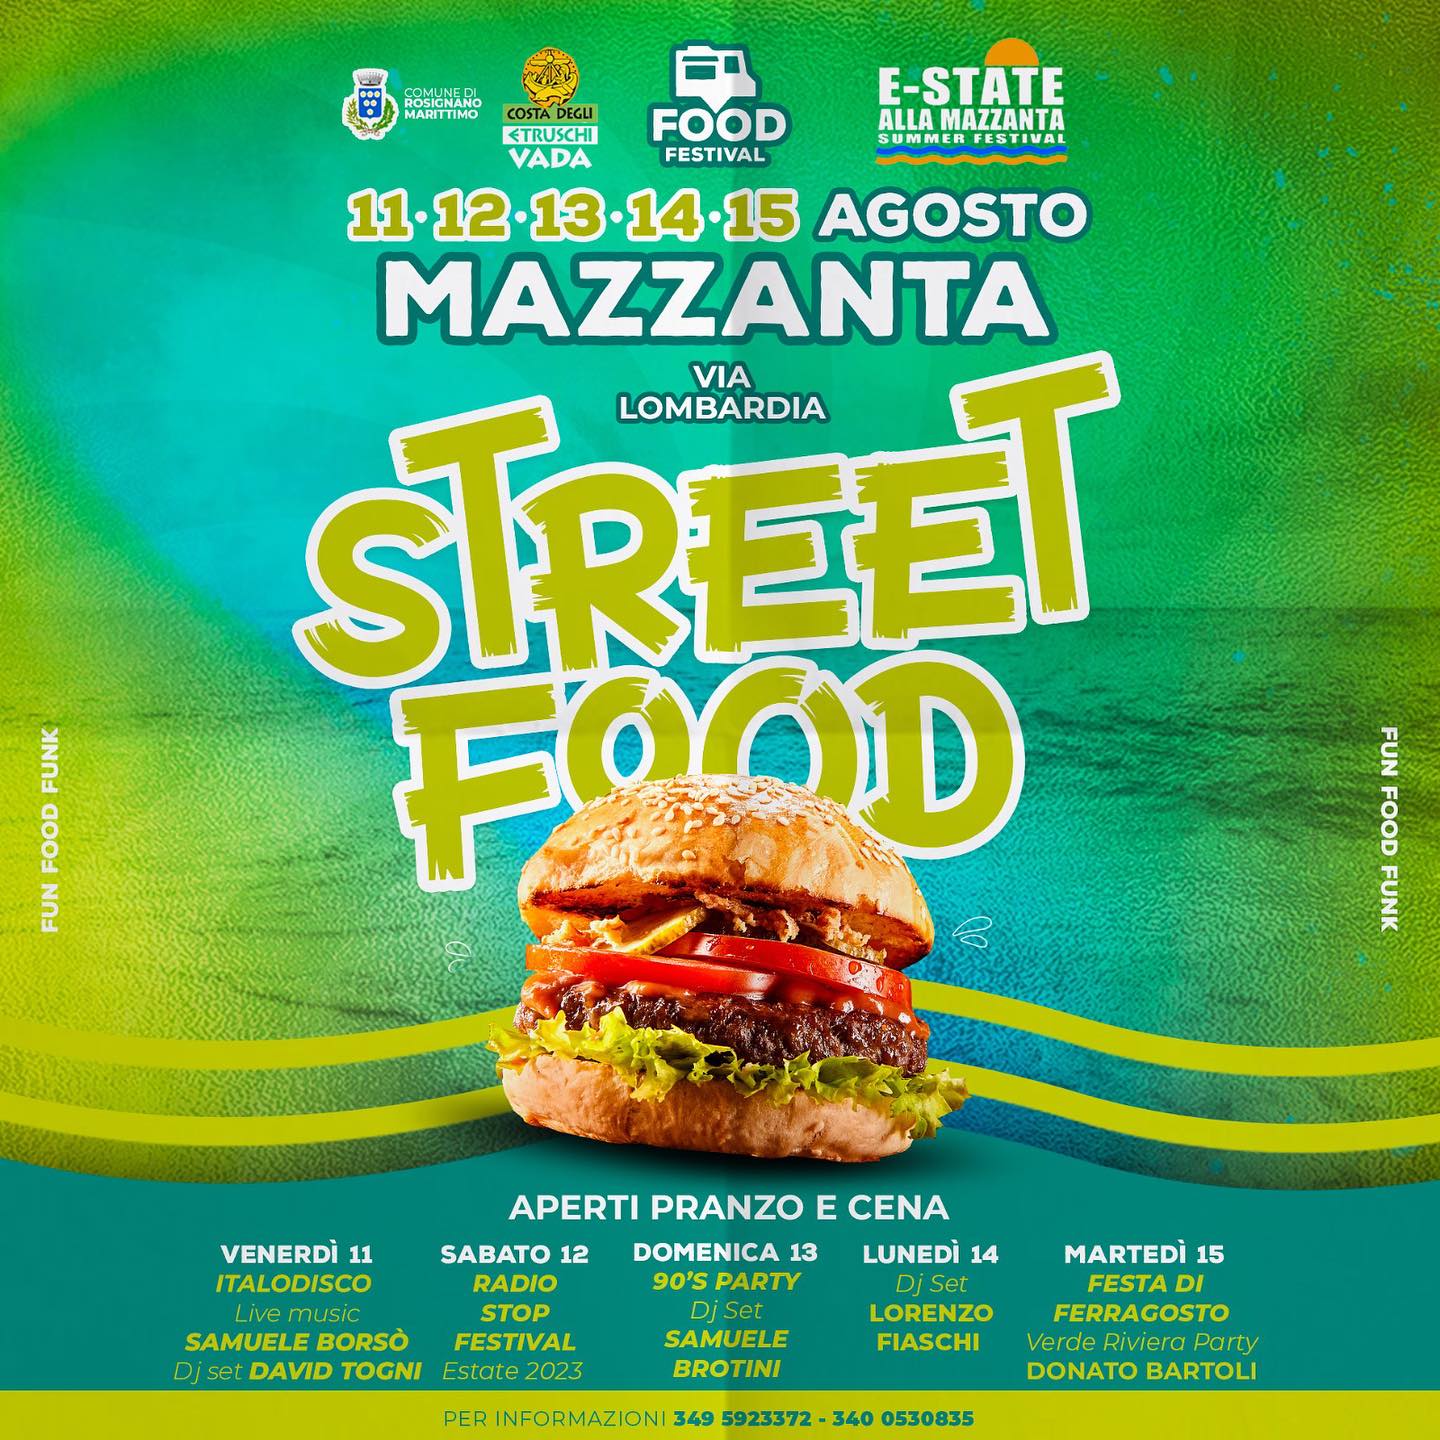 mazzanta-street-food-festival